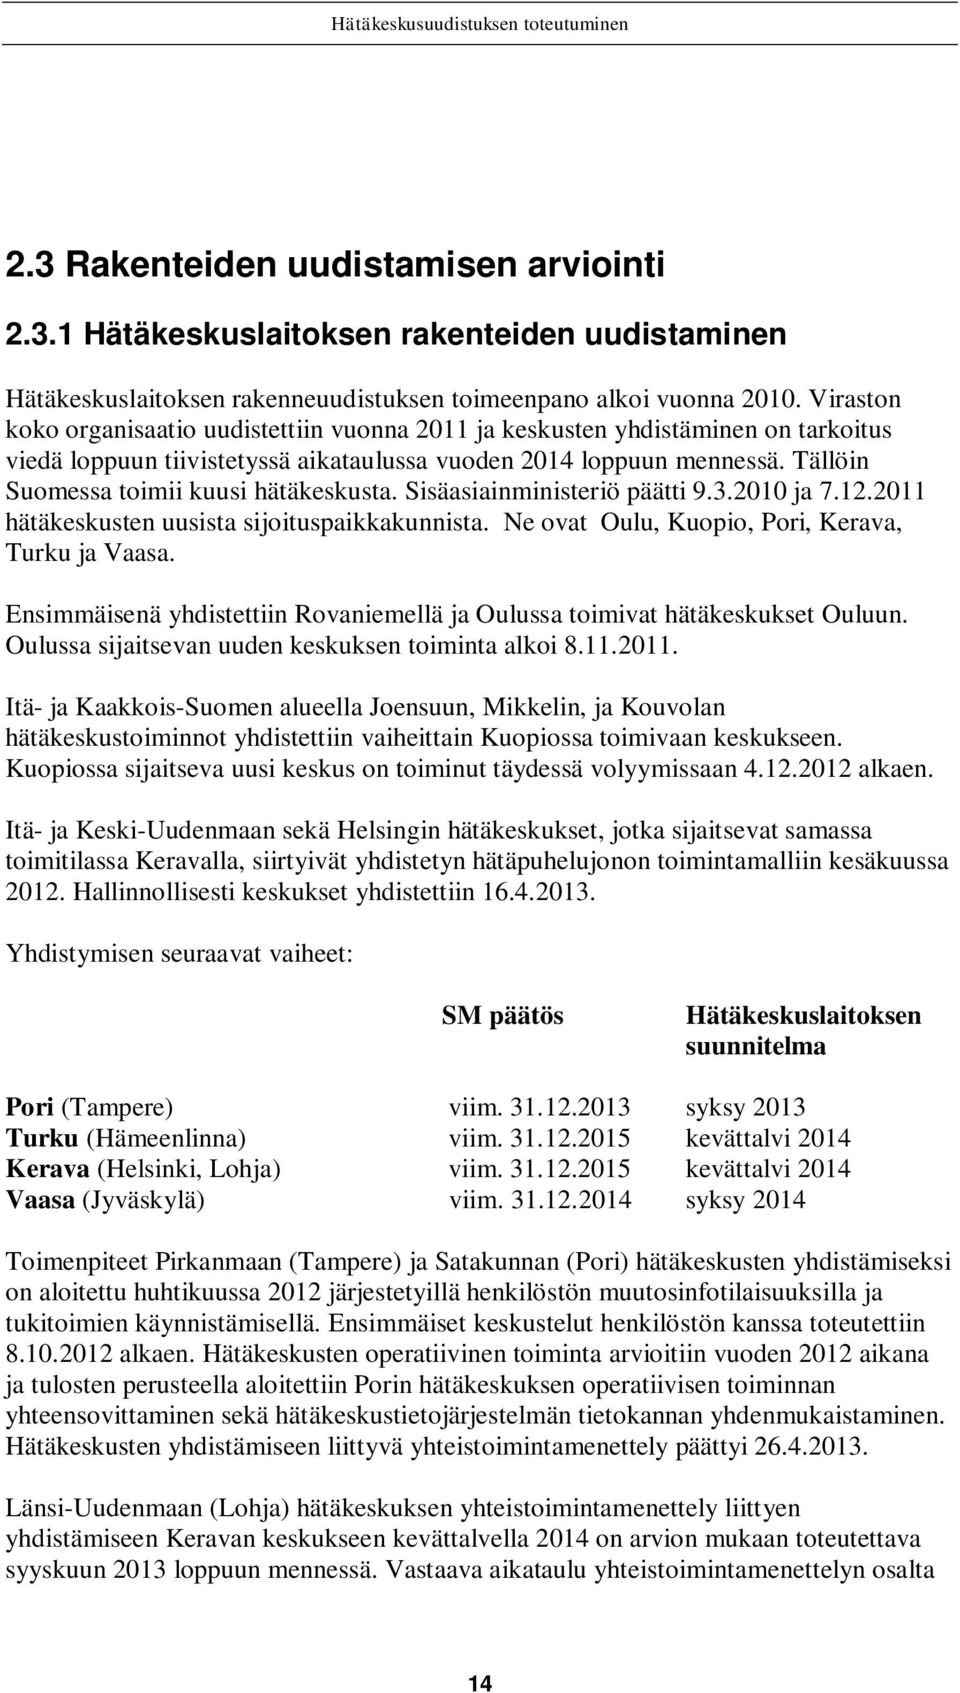 Tällöin Suomessa toimii kuusi hätäkeskusta. Sisäasiainministeriö päätti 9.3.2010 ja 7.12.2011 hätäkeskusten uusista sijoituspaikkakunnista. Ne ovat Oulu, Kuopio, Pori, Kerava, Turku ja Vaasa.